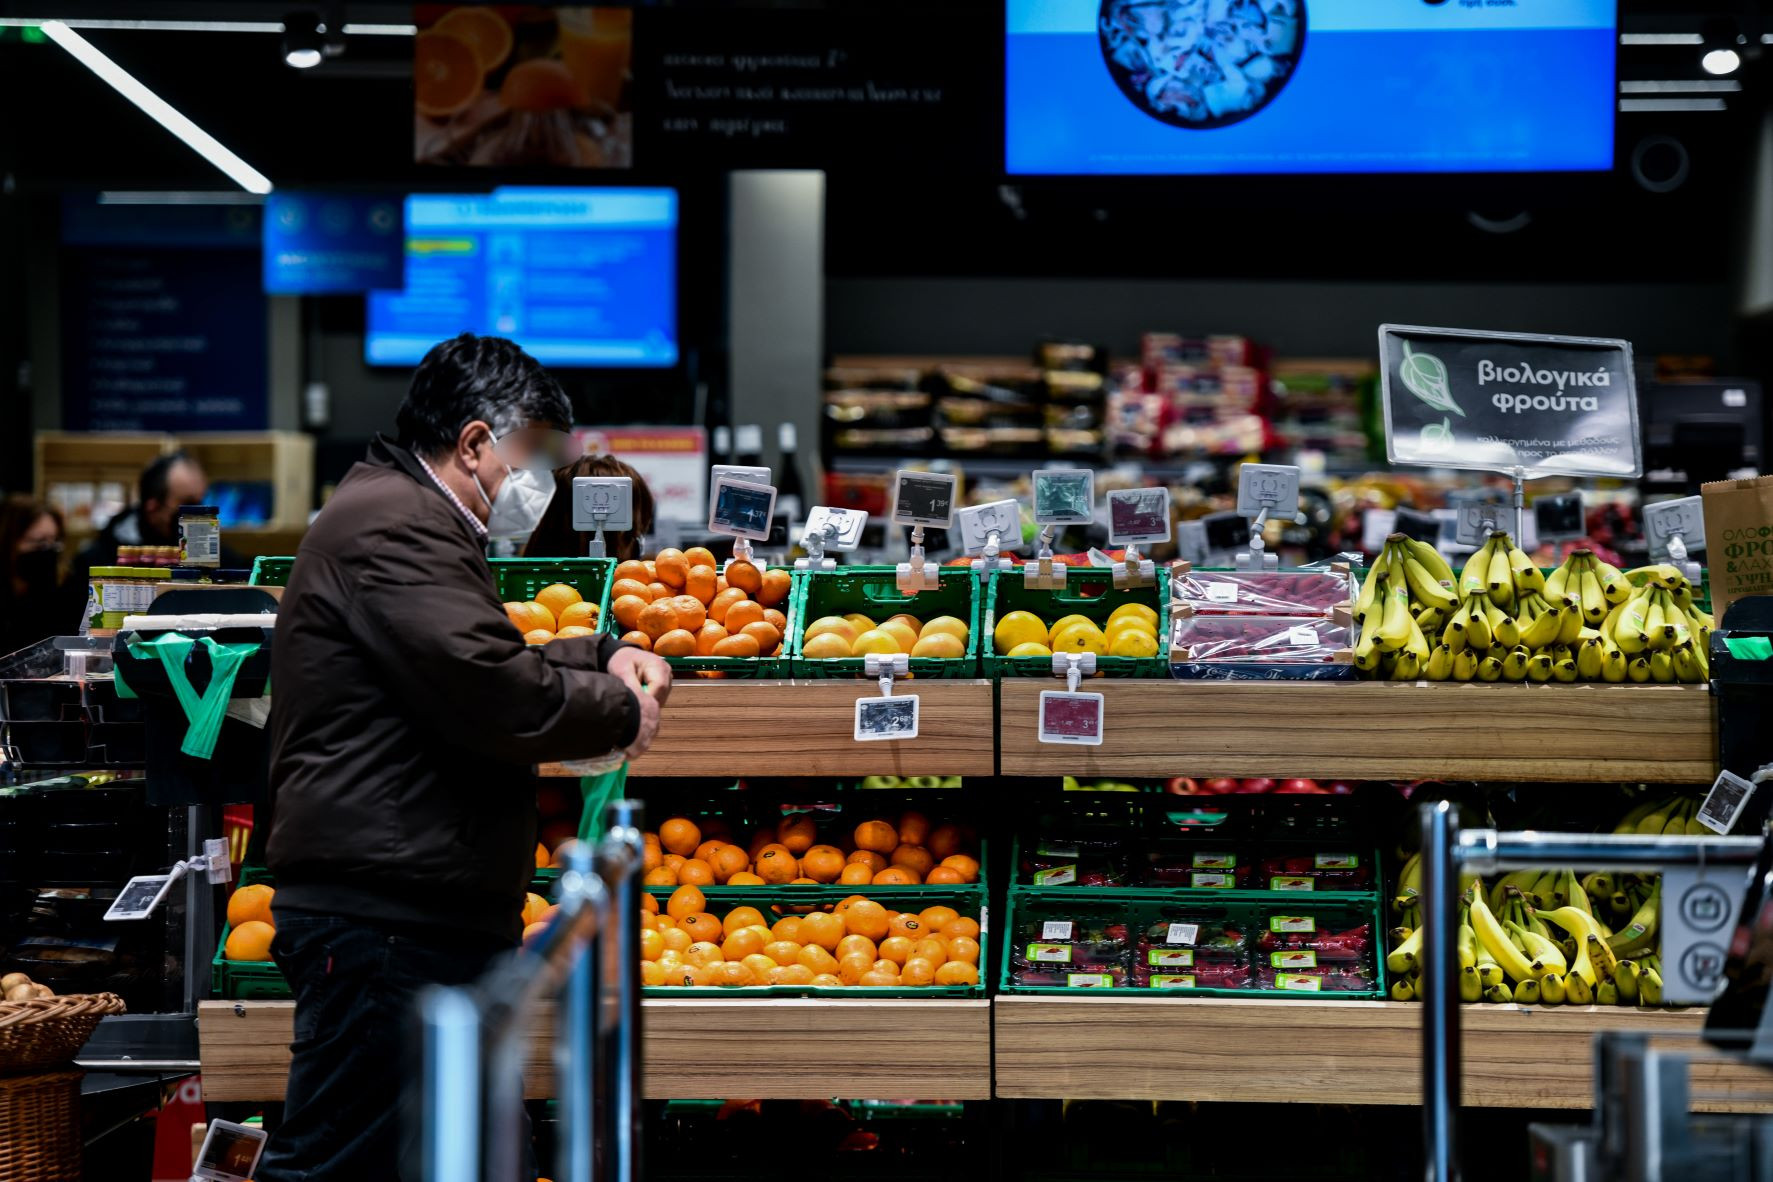 Έρευνα του ΙΕΛΚΑ: Οκτώ στους δέκα καταναλωτές κυνηγούν προσφορές – 61% δηλώνει ότι έχει μειώσει συνολικά τις αγορές σε τρόφιμα